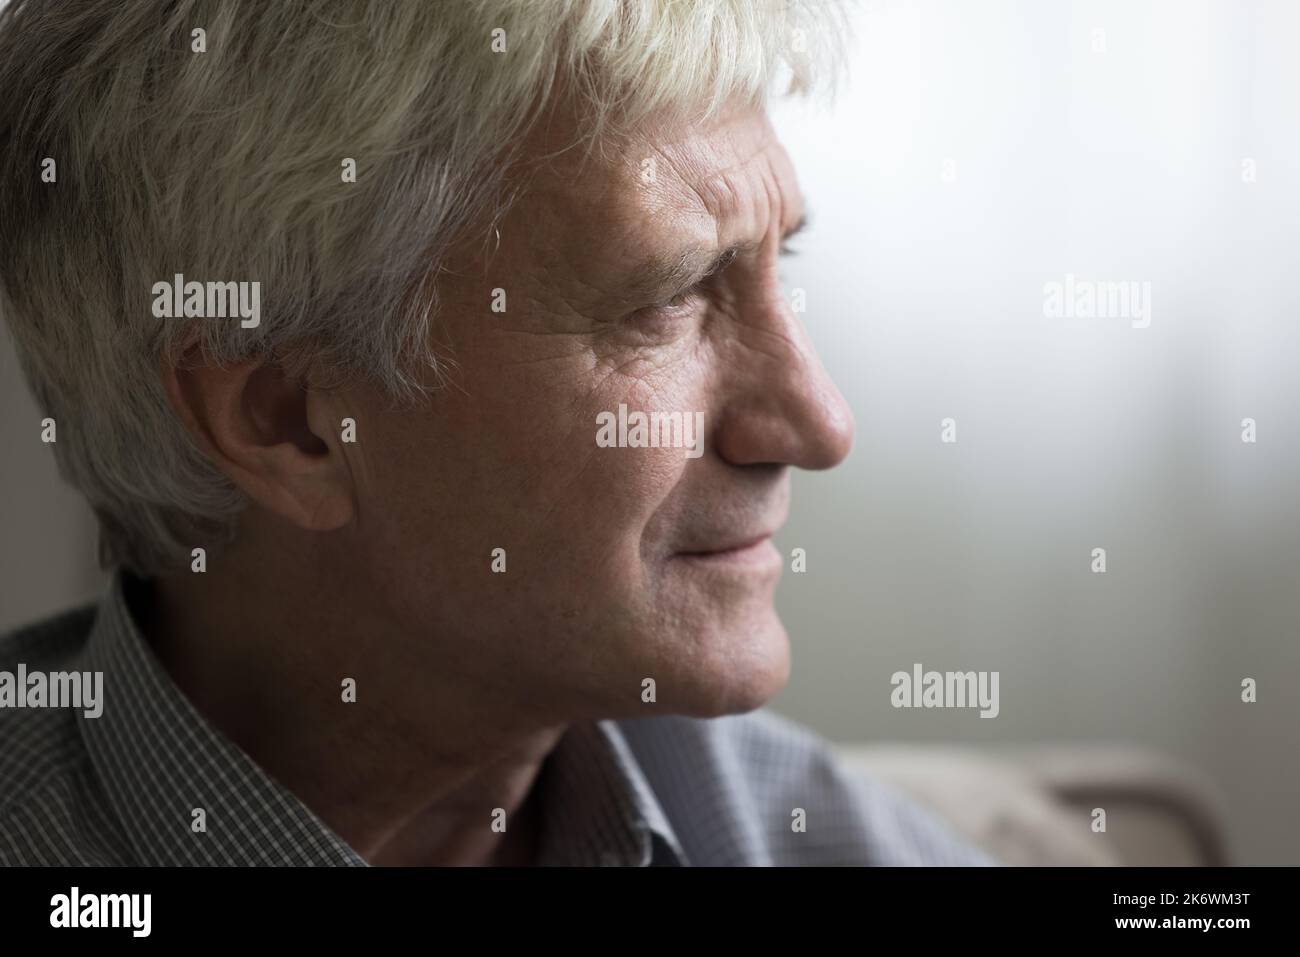 Closeup face of pensive sad senior man staring into distance Stock Photo